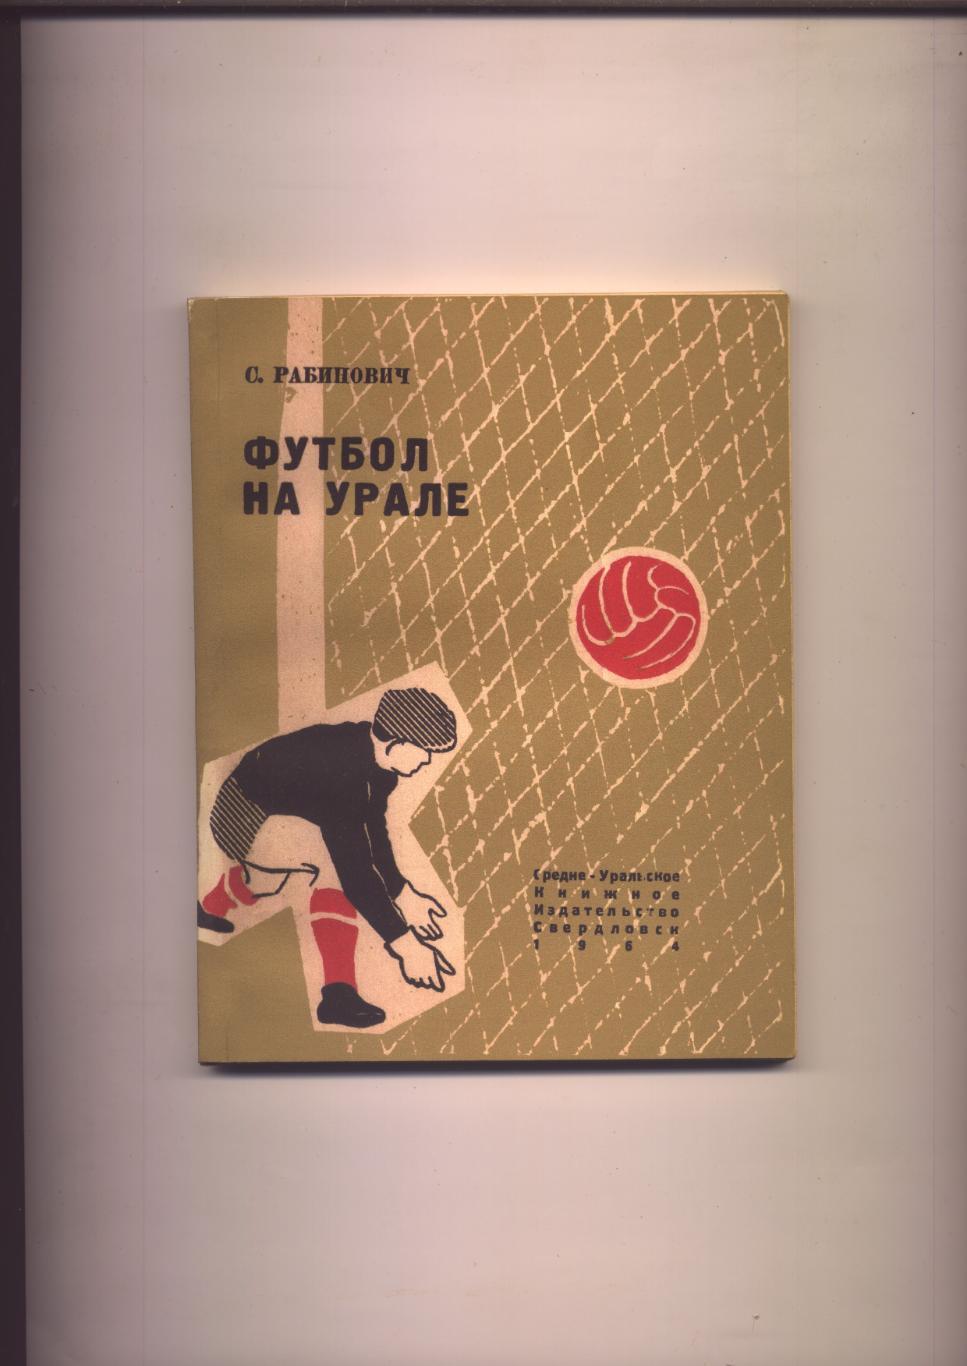 Книга Футбол на Урале История фото 1912 - 1964 гг